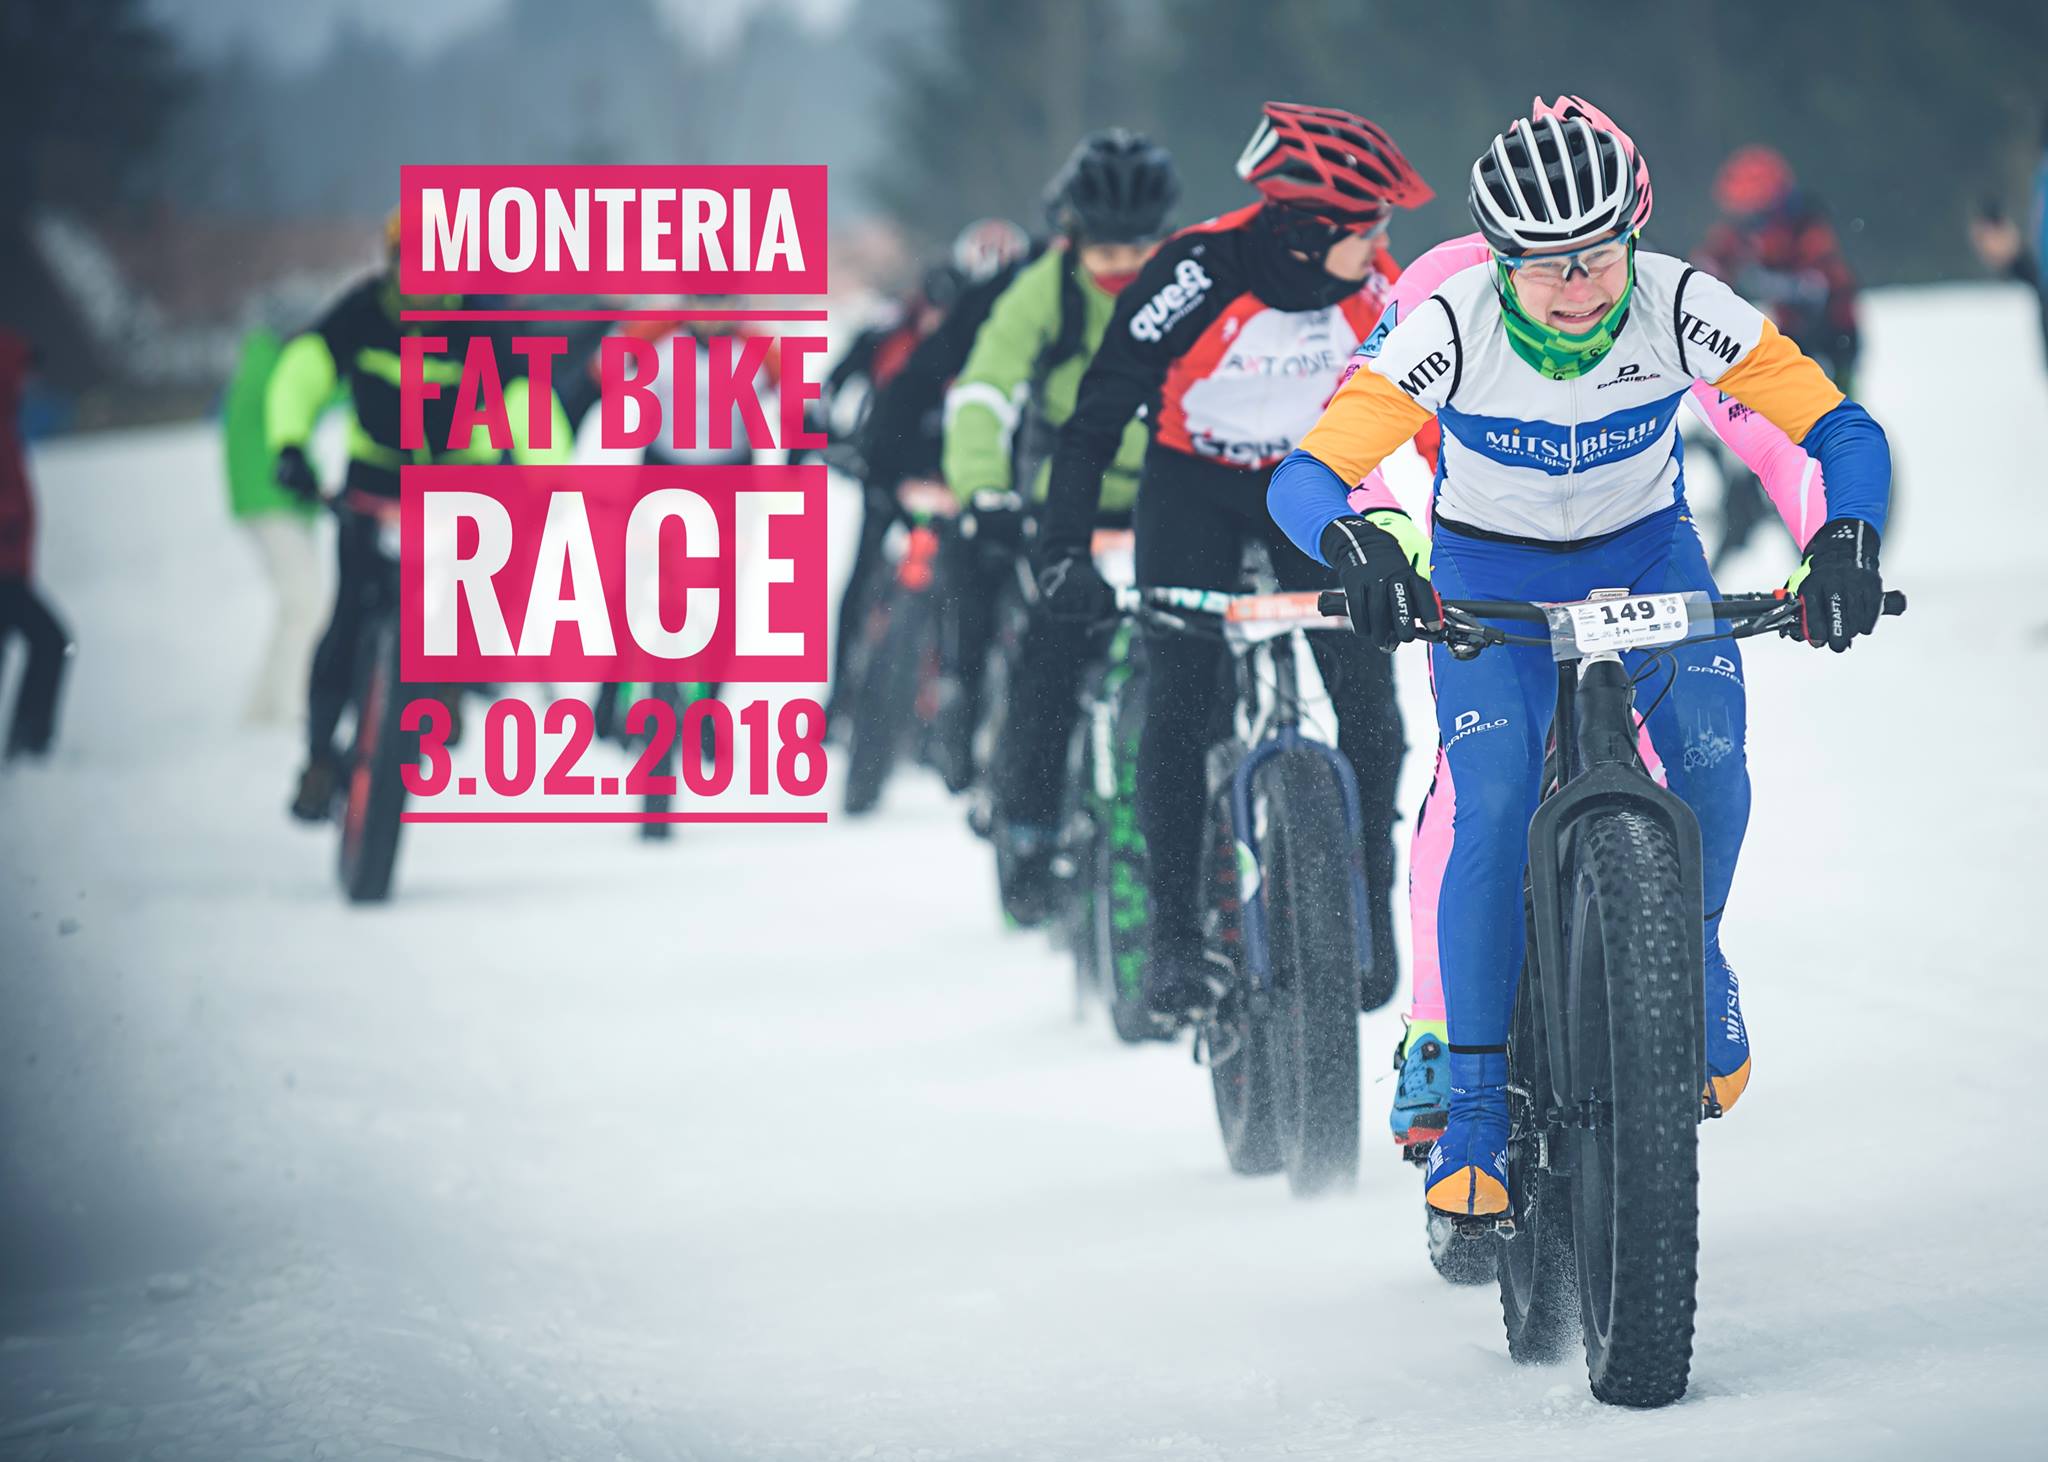 Monteria FBR 2018